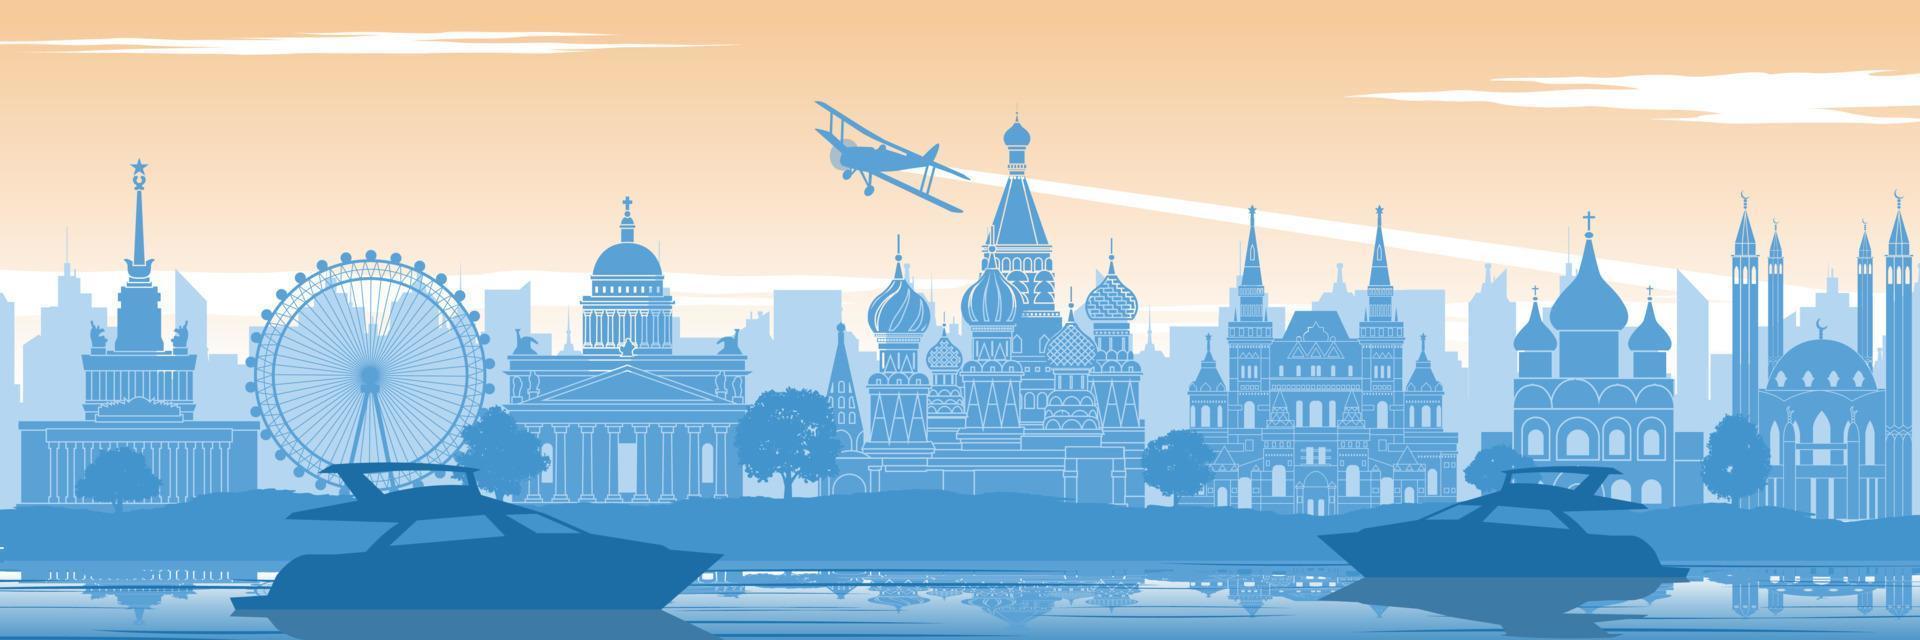 Rusia famoso punto de referencia en la parte trasera del río y el yate en un diseño de silueta de estilo escenográfico en color amarillo azul y naranja vector